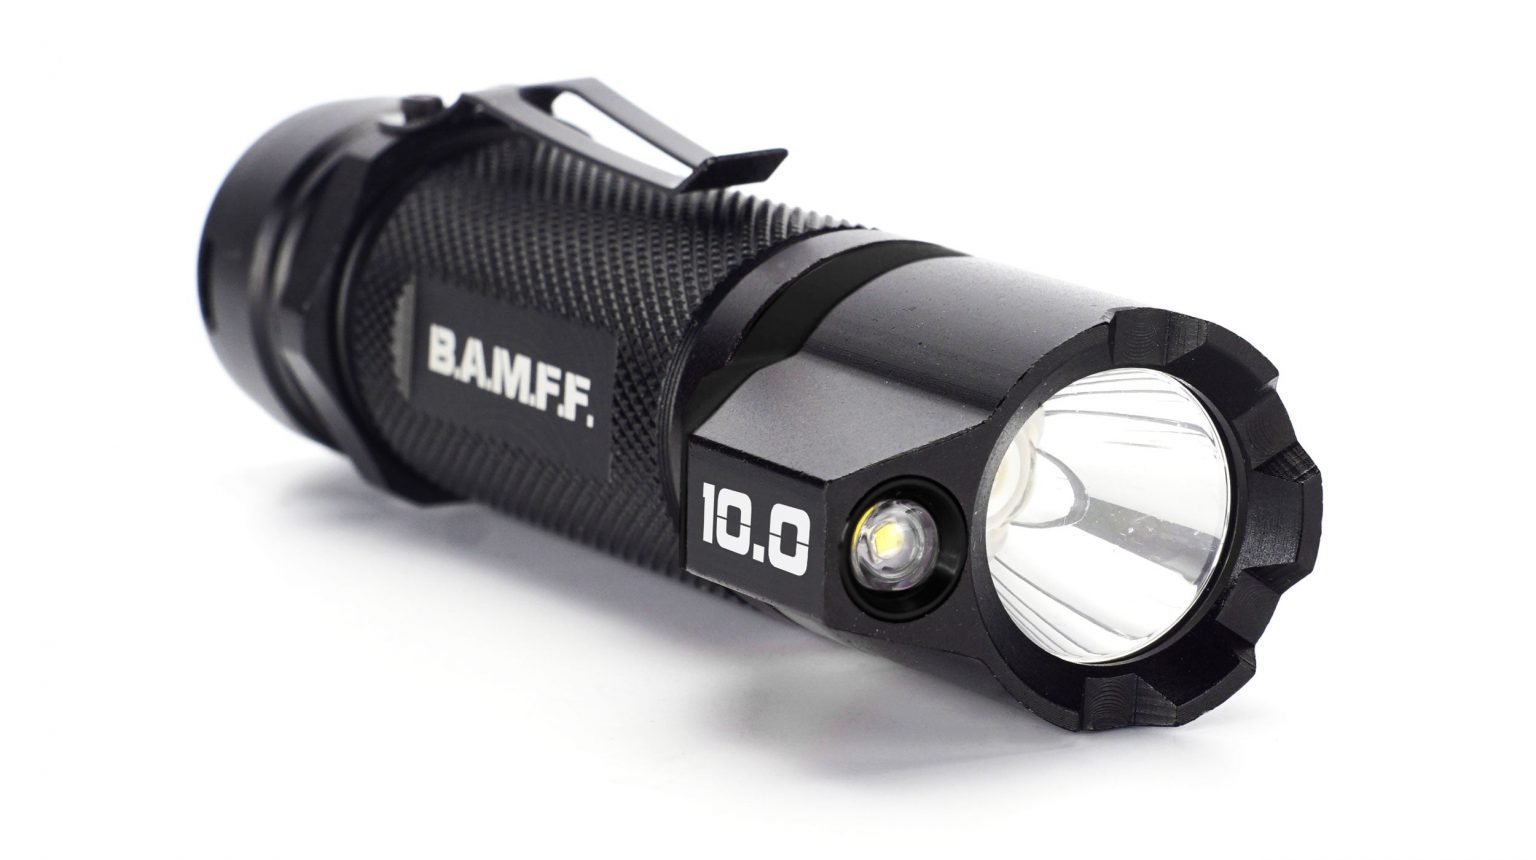 bamff_10_flashlight_main_image_angle-1-1.jpg